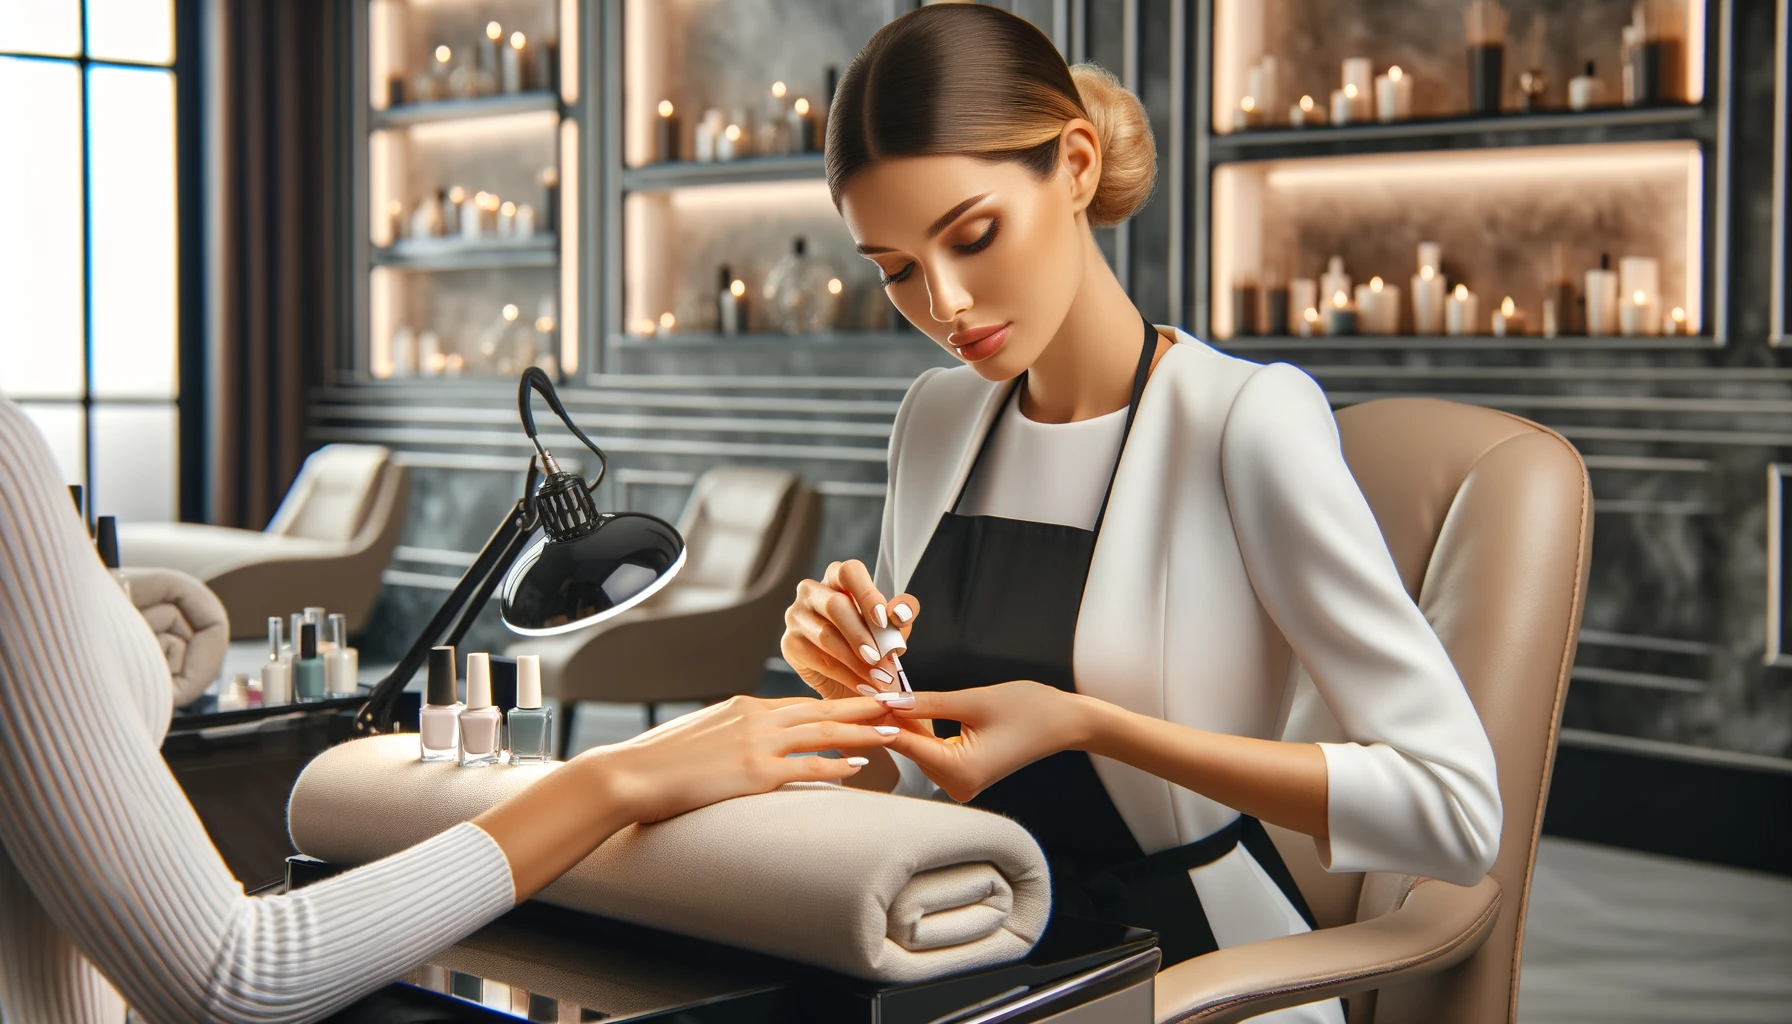 Profesjonalna kosmetyczka wykonująca manicure japoński w luksusowym salonie, z nowoczesnym wyposażeniem i eleganckim wystrojem, klientka relaksująca się na fotelu